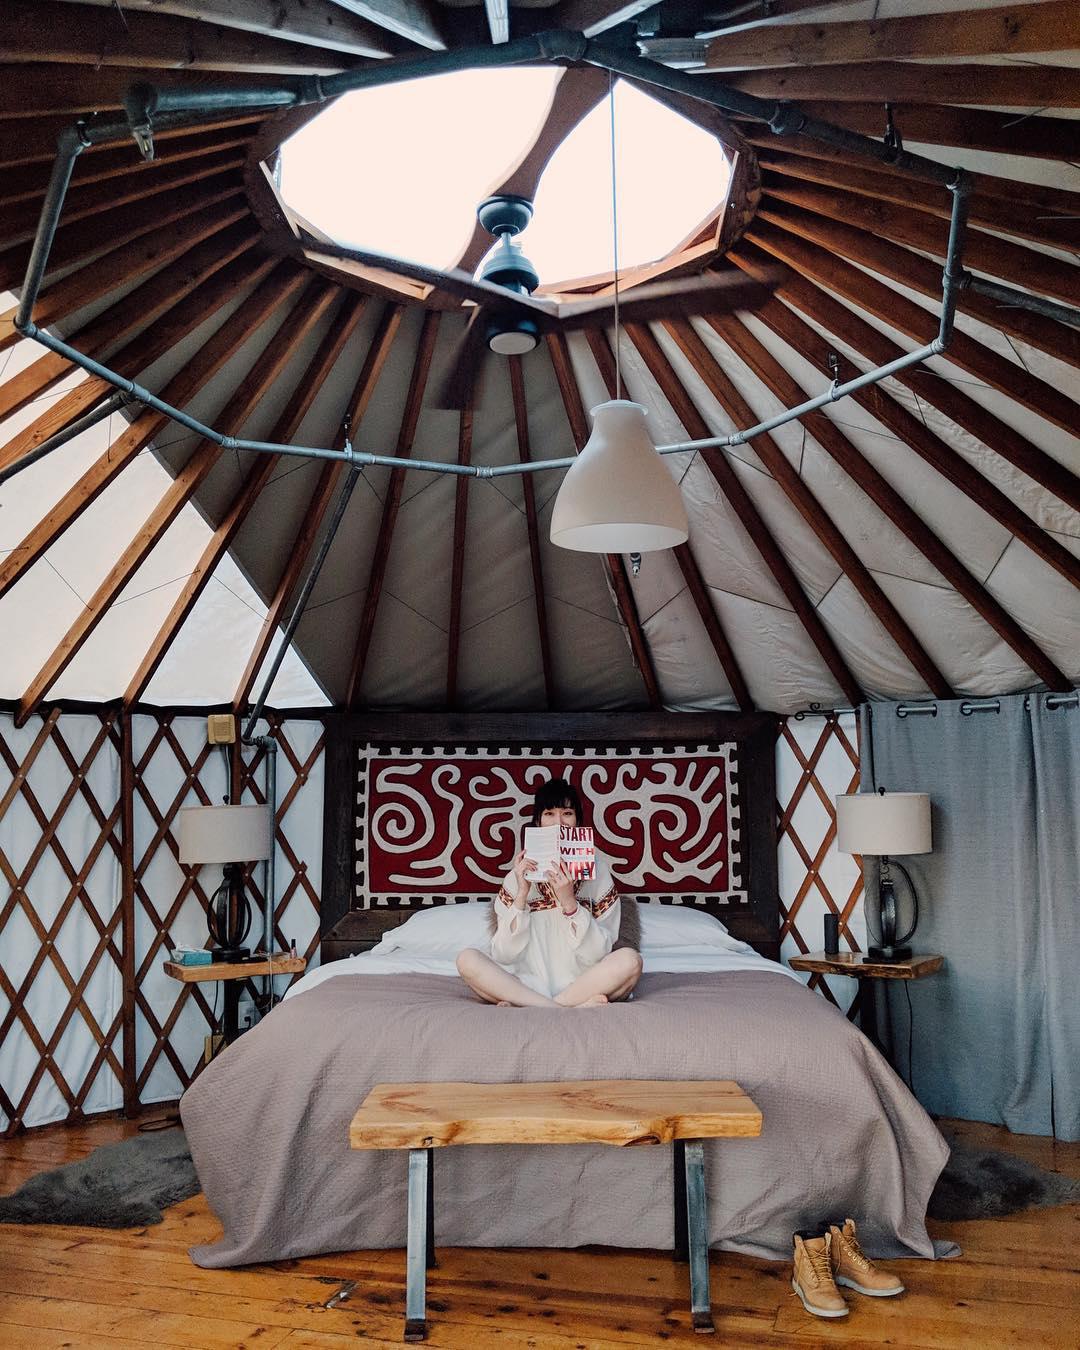 浪漫的野外露营 帐篷酒店经度131°